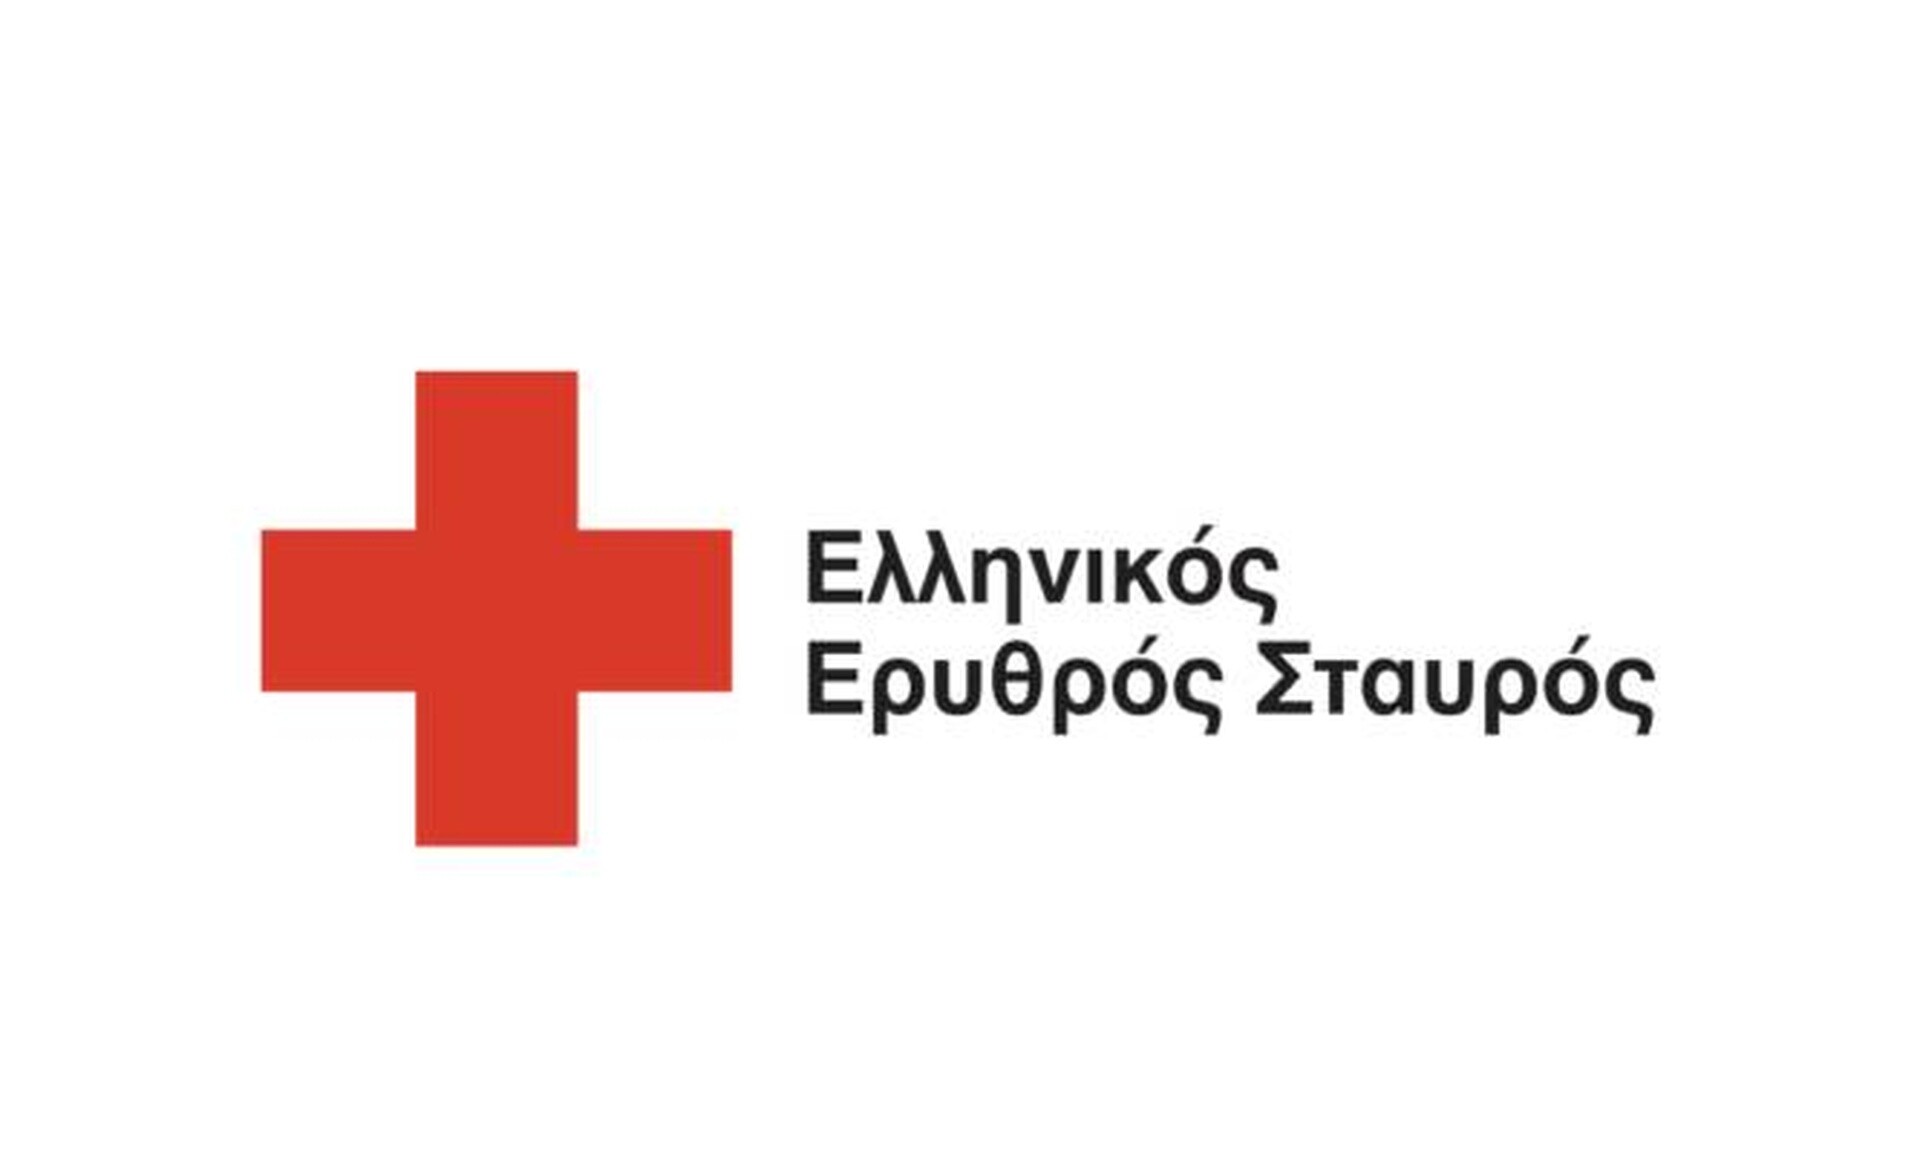 Ελληνικός Ερυθρός Σταυρός: Διαψεύδει διαδικτυακή Ανακοίνωση Παζαριού που φέρει το όνομά του